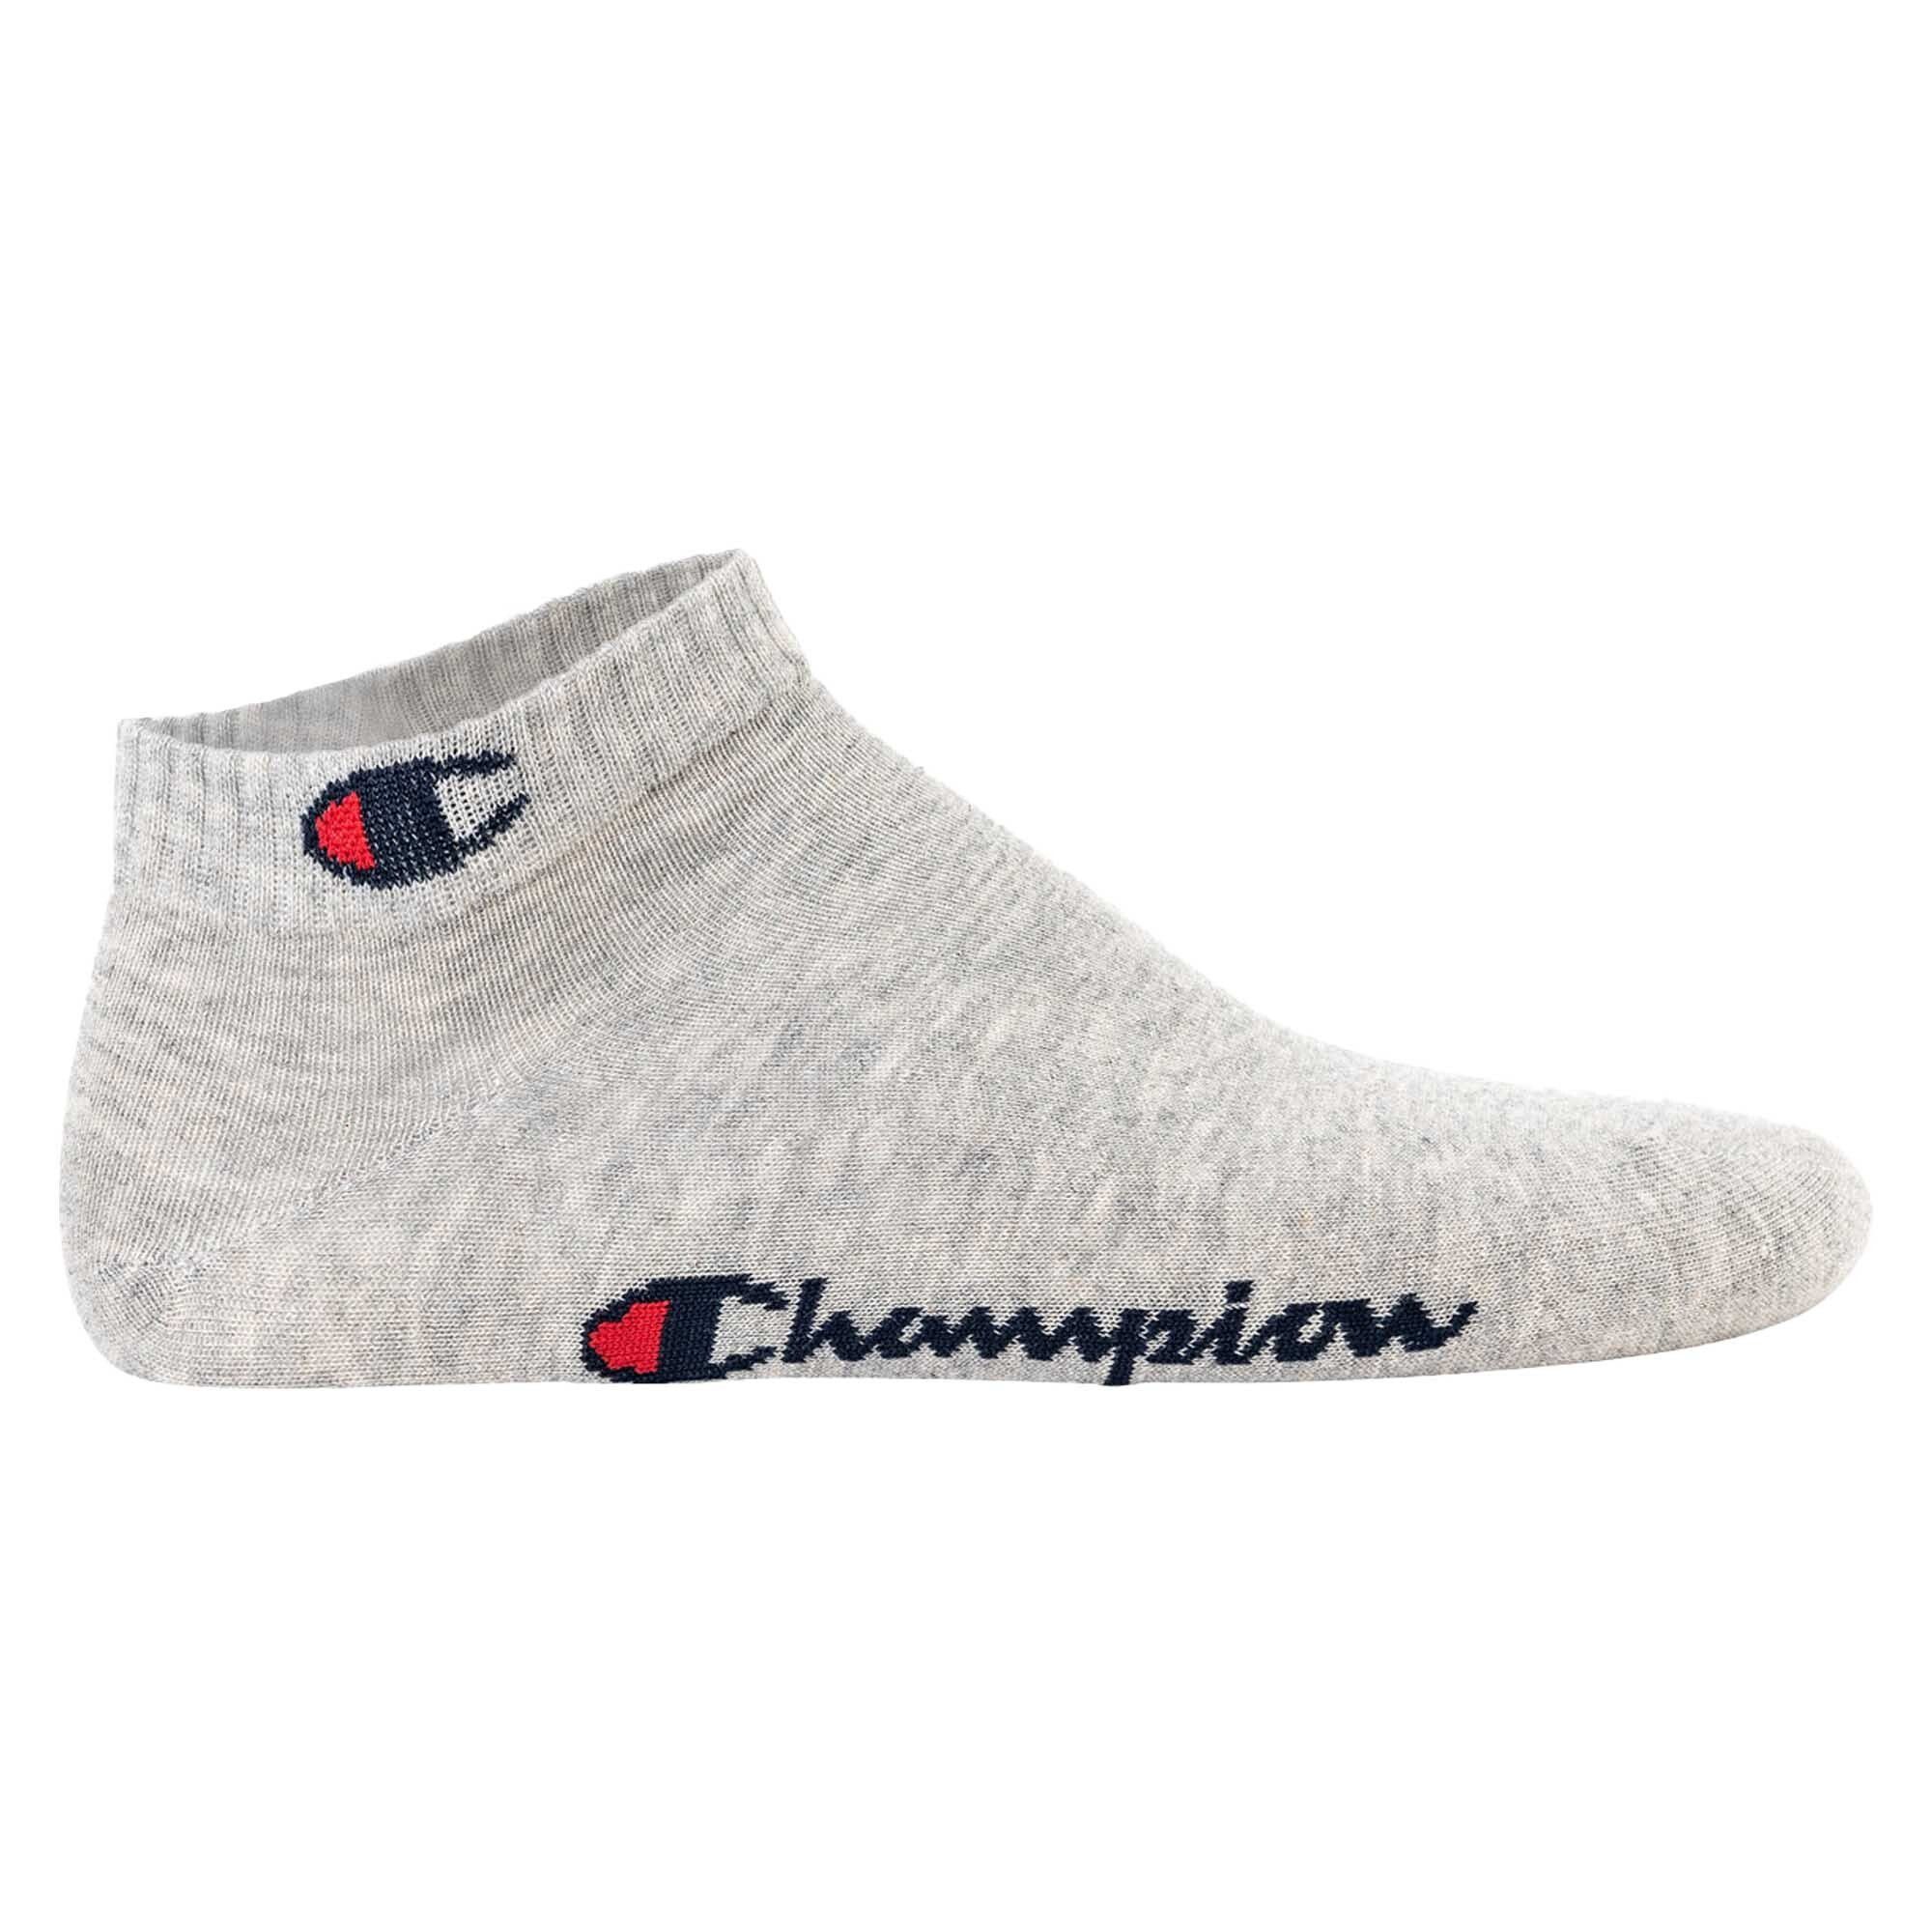 6 Schwarz/Weiß/Grau Basic Paar Unisex - Sportsocken Crew Socken, Socken Champion